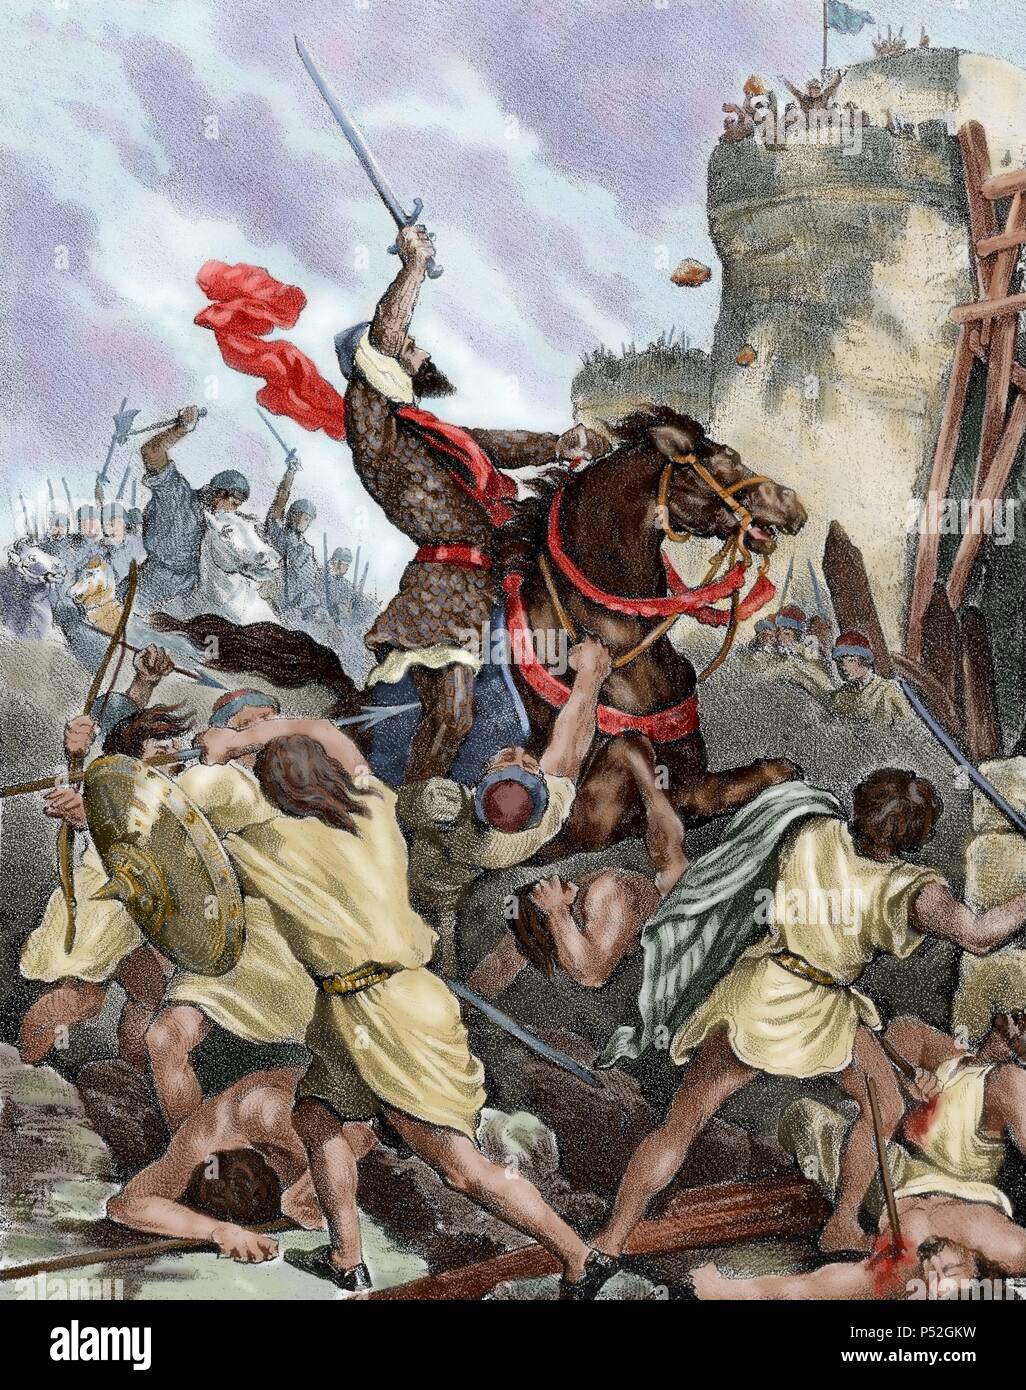 Rodrigo Diaz de Vivar (c.1043-1099), conosciuta come El Cid. Nobile castigliano, capo militare e diplomatico. Conquista di Valencia (15 giugno 1094). Spagna. Incisione colorata. Foto Stock